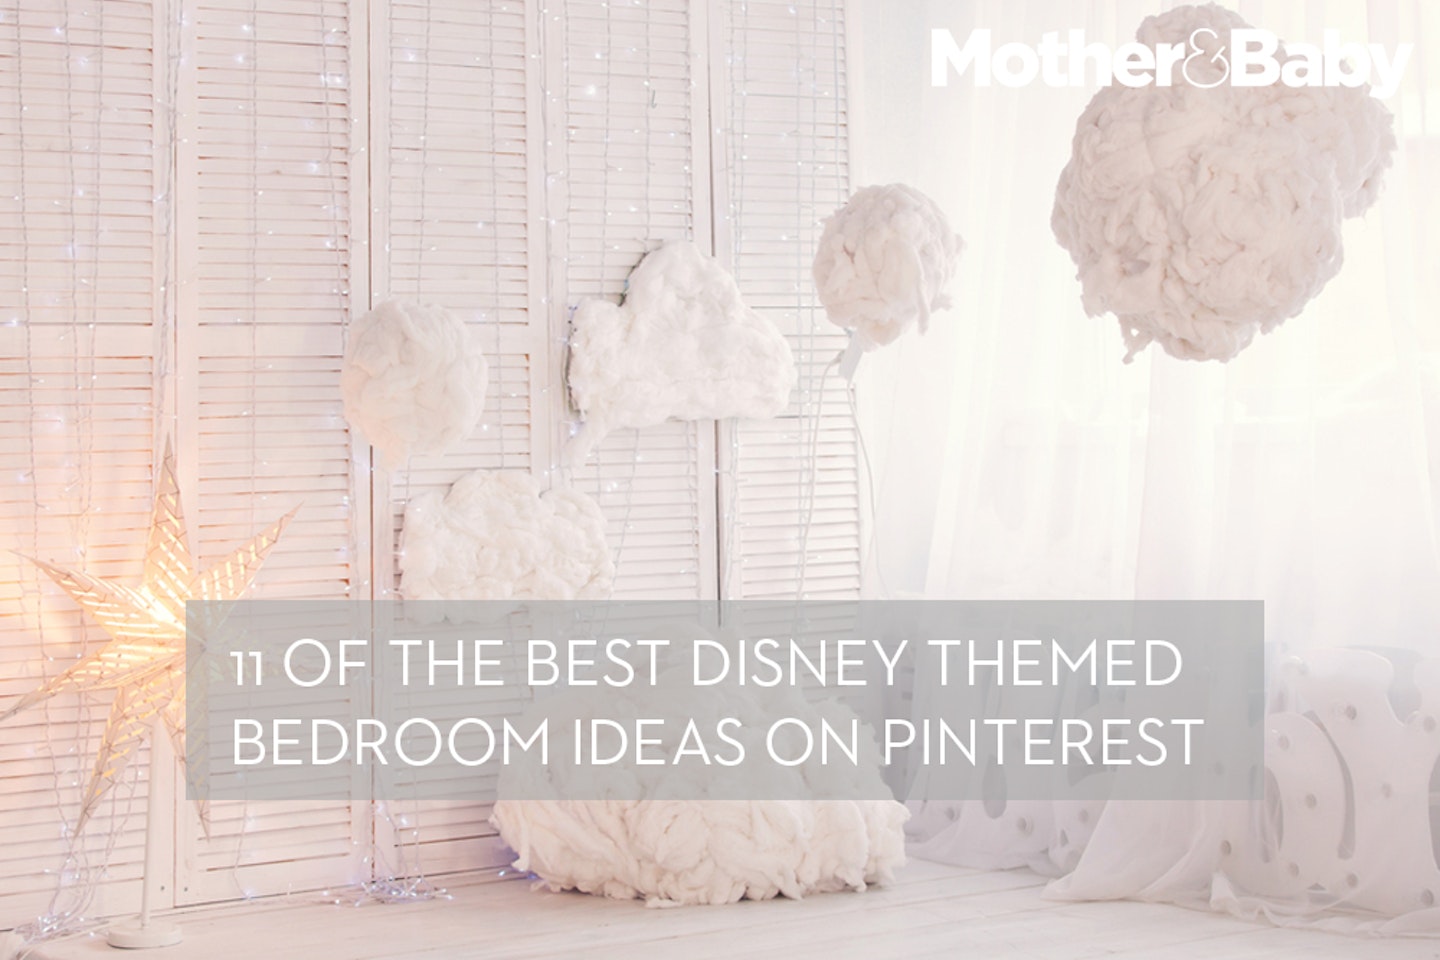 Disney themed bedroom ideas